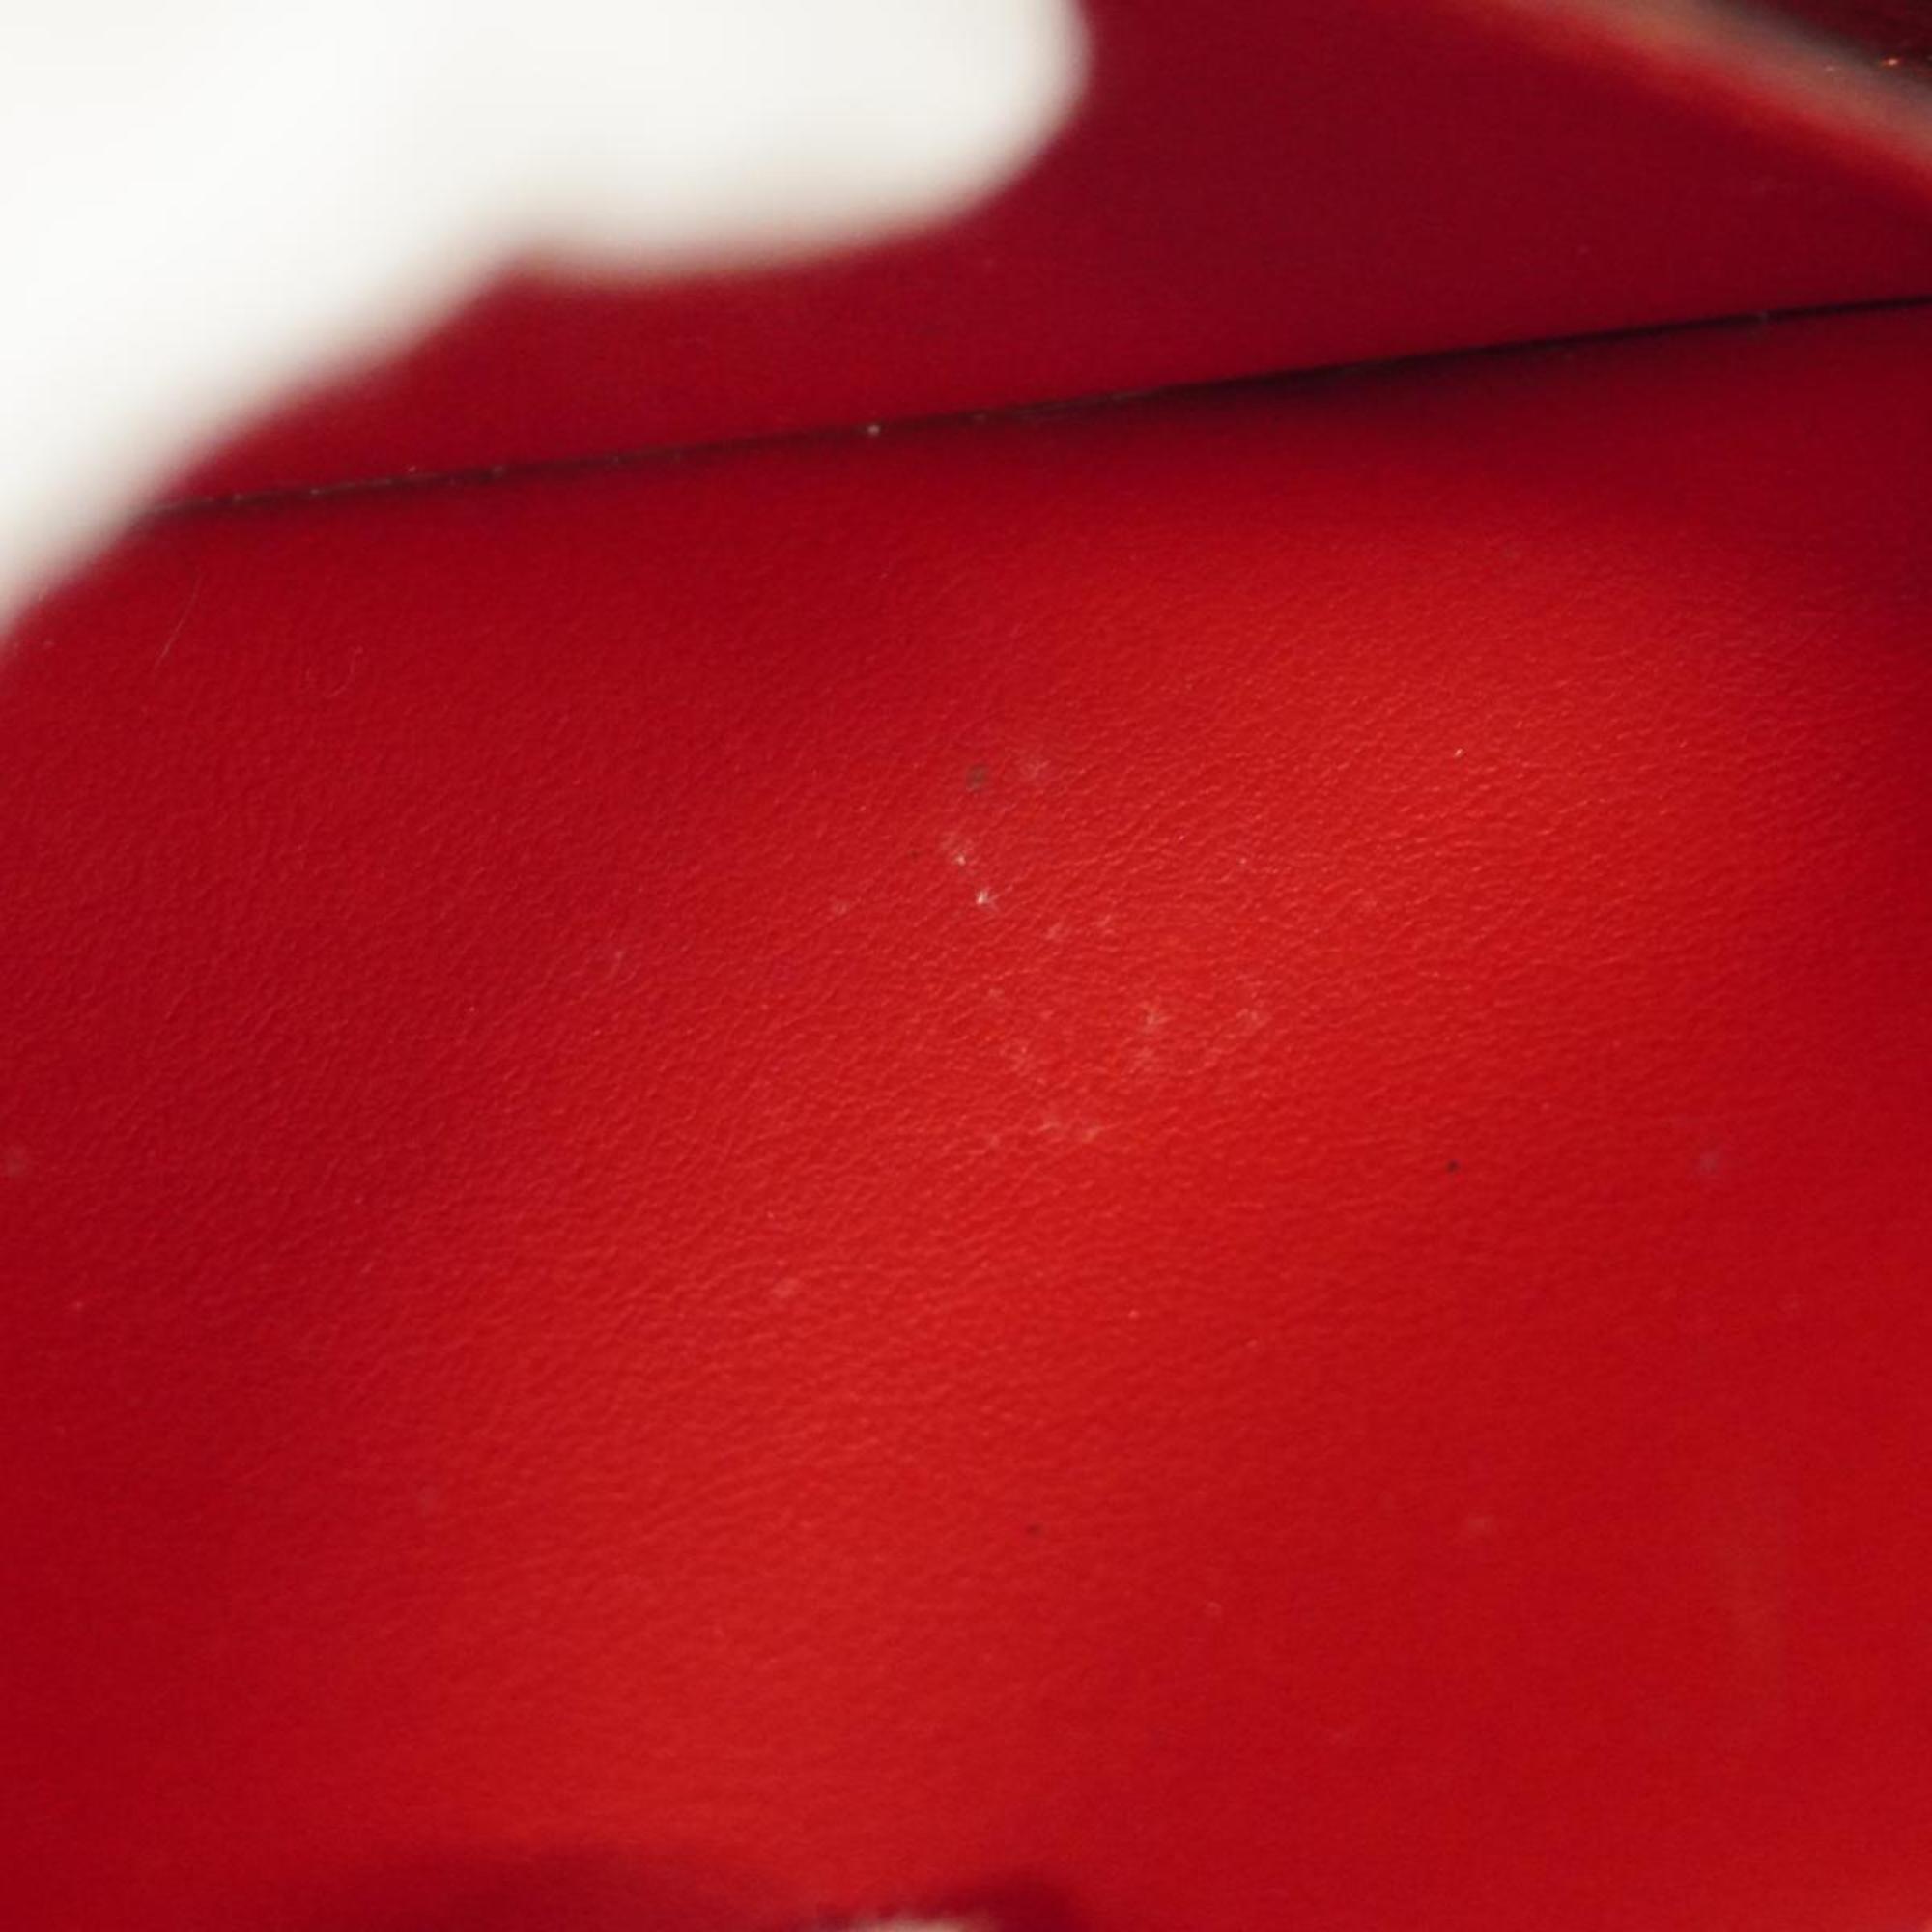 ルイ・ヴィトン(Louis Vuitton) ルイ・ヴィトン 長財布 モノグラム レティーロ ジッピーウォレット M61854 スリーズメンズ レディース